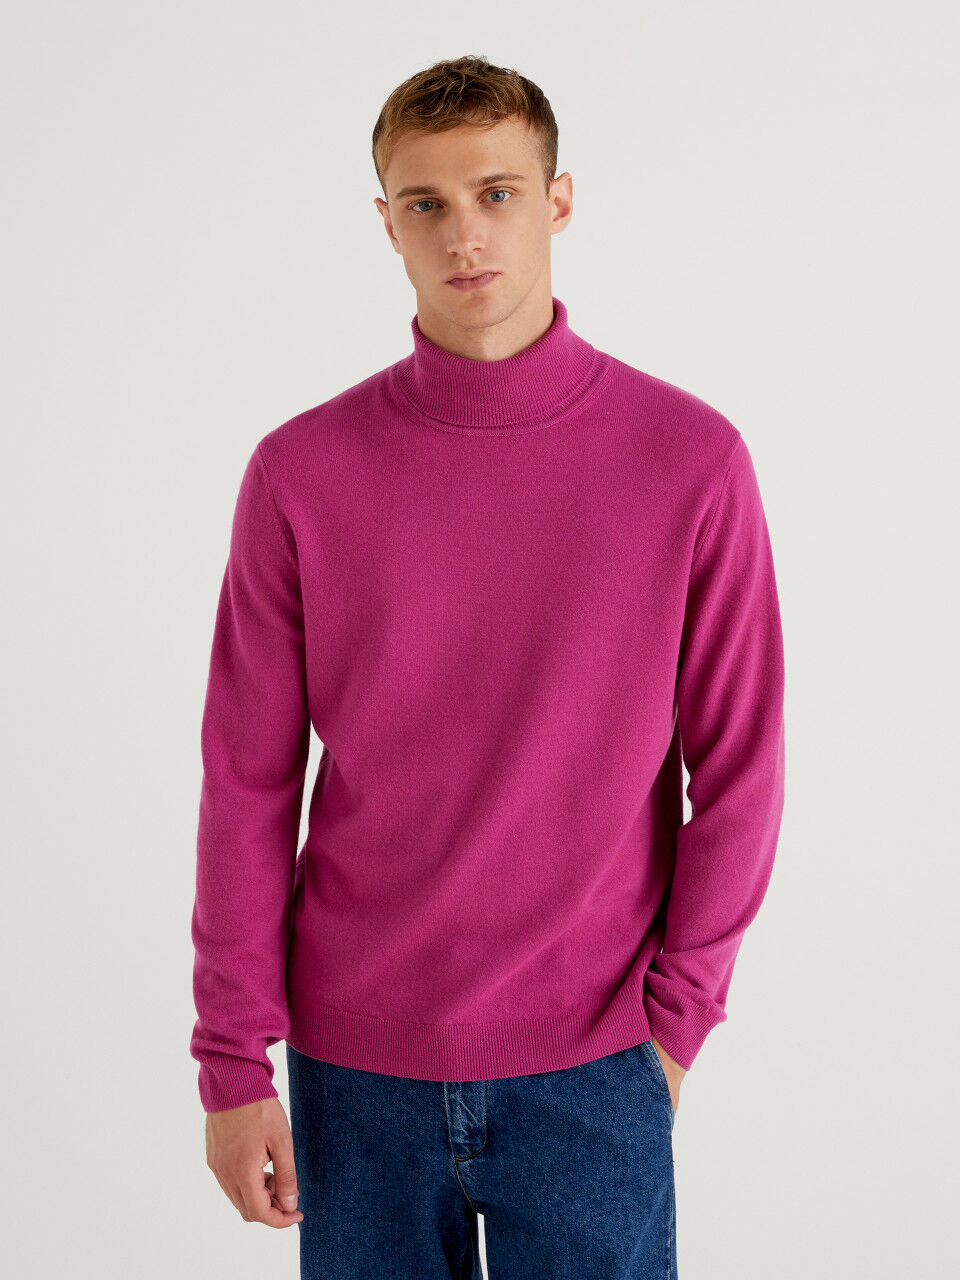 Mens Clothing Sweaters and knitwear Turtlenecks Lardini Roll-neck Wool Jumper in Green for Men Blue 